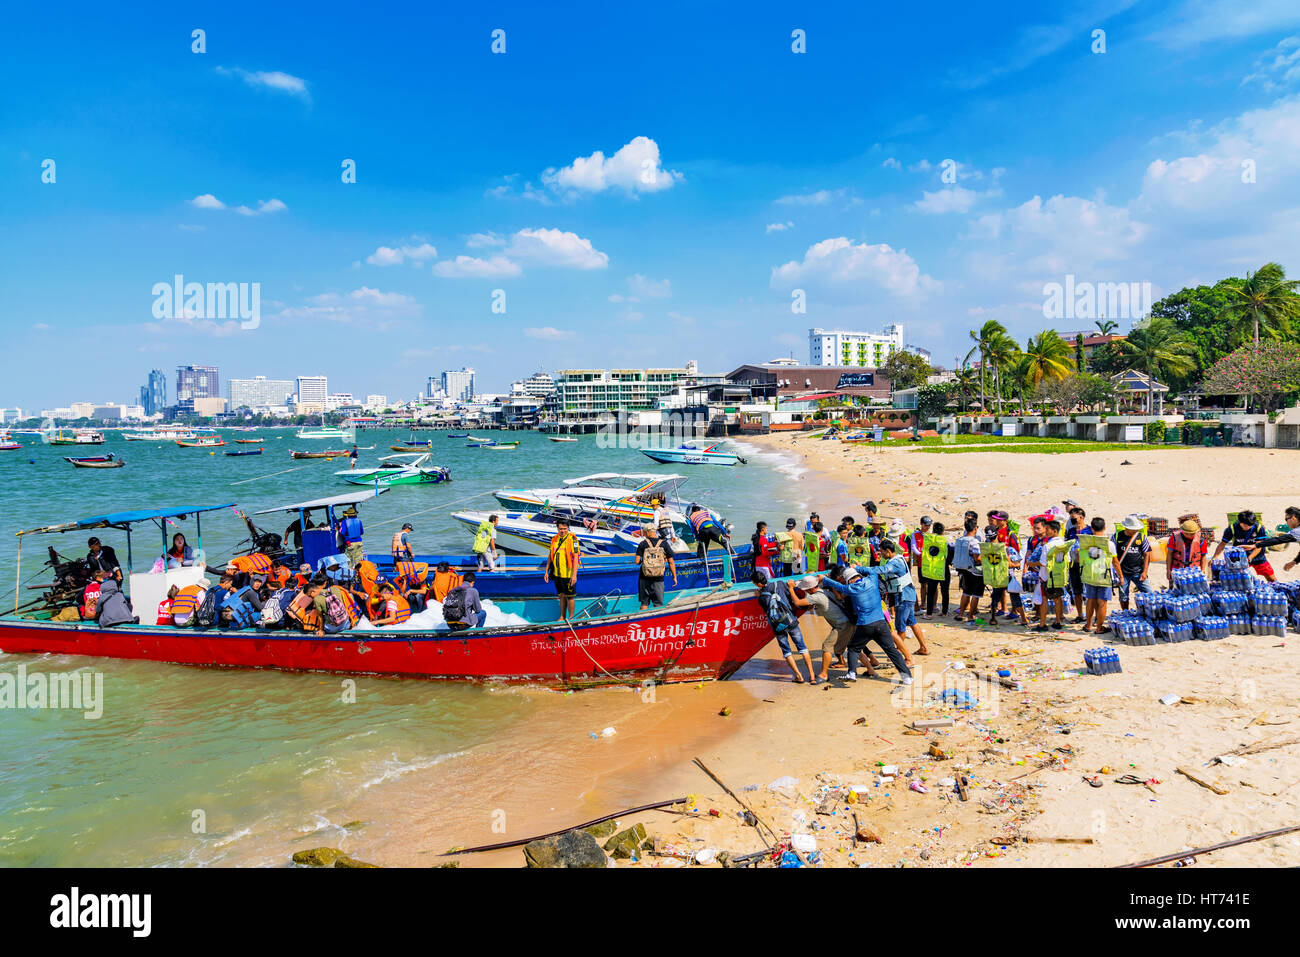 PATTAYA, THAILAND - 25 Januar: Arbeiter laden Kisten an Getränken auf ein Boot an einem Strand in Pattaya am 25. Januar 2017 in Pattaya Stockfoto